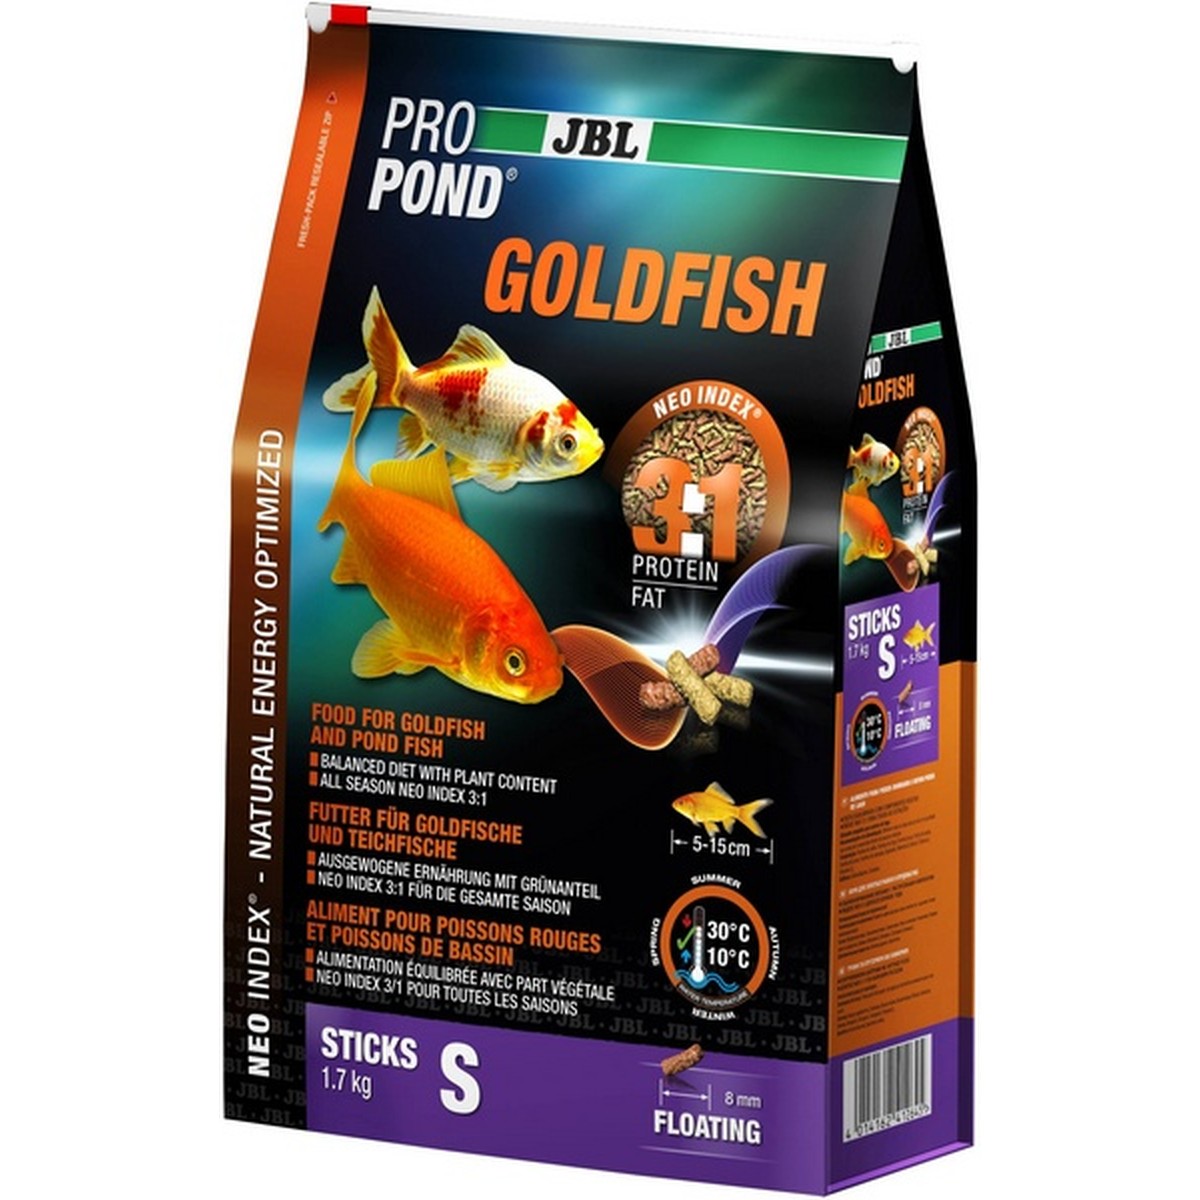   JBL ProPond Goldfish S, 1,7 kg  1.7kg